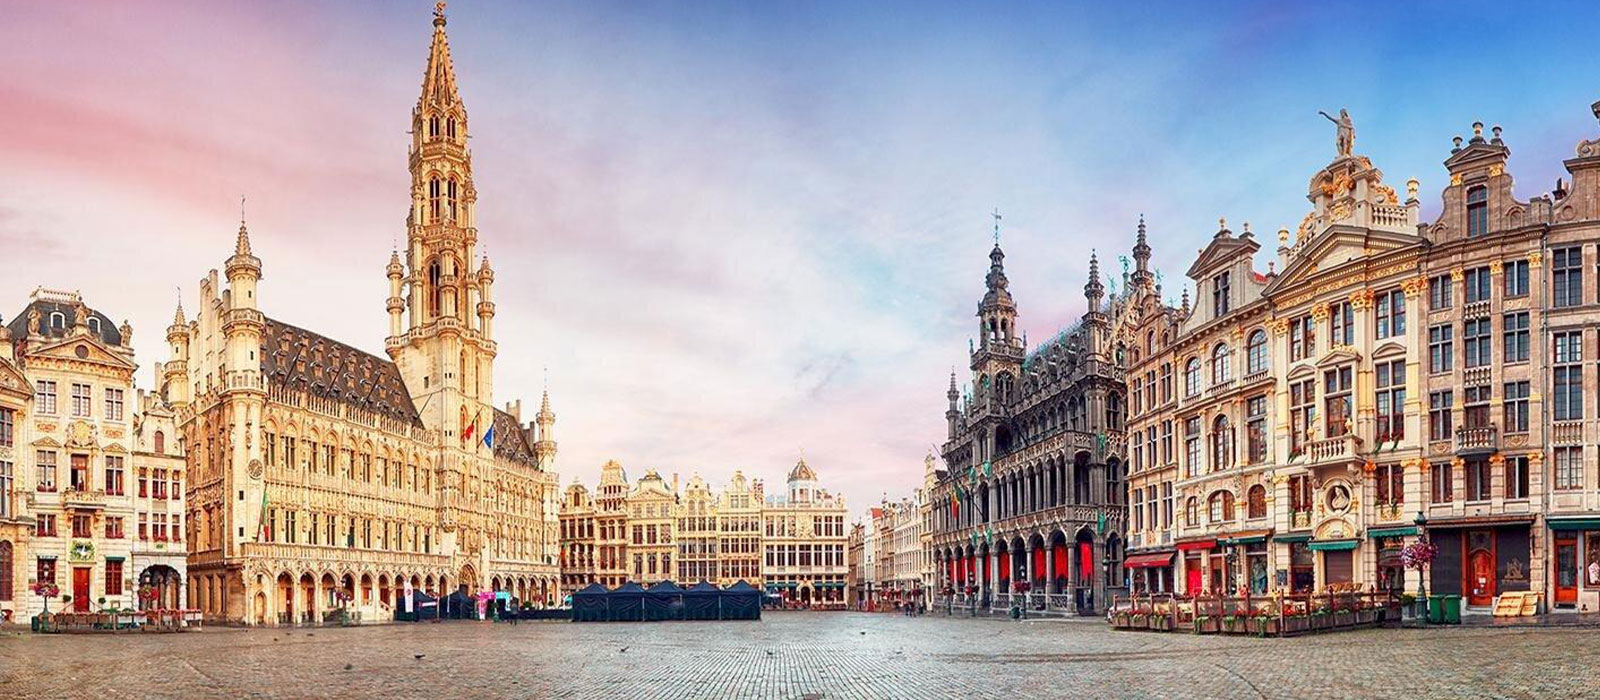 Tận hưởng tour du lịch Bỉ theo cách riêng của bạn